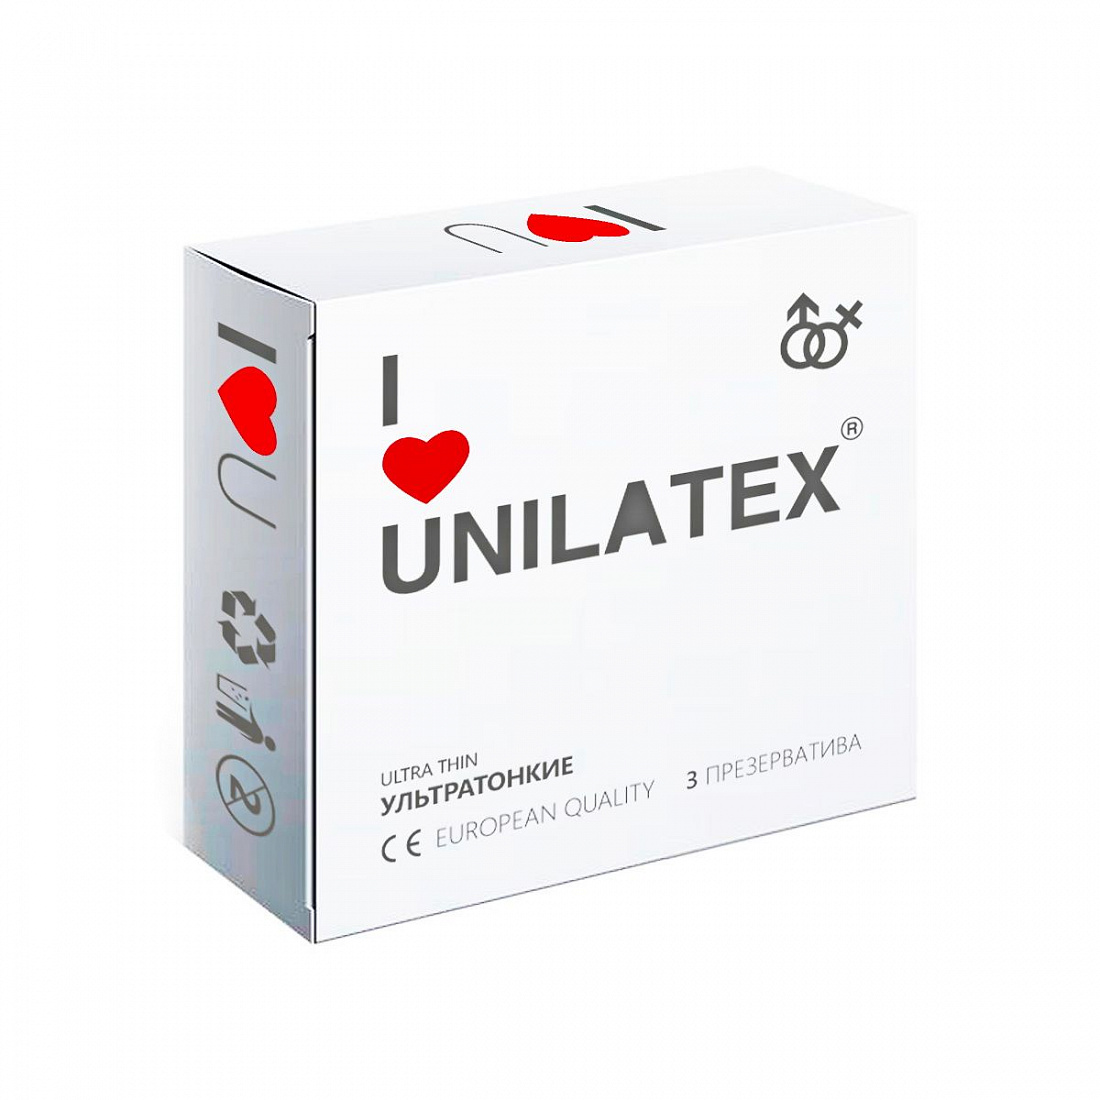   Unilatex Ultra Thin - 3 . Unilatex Unilatex Ultra Thin 3 -  287 .